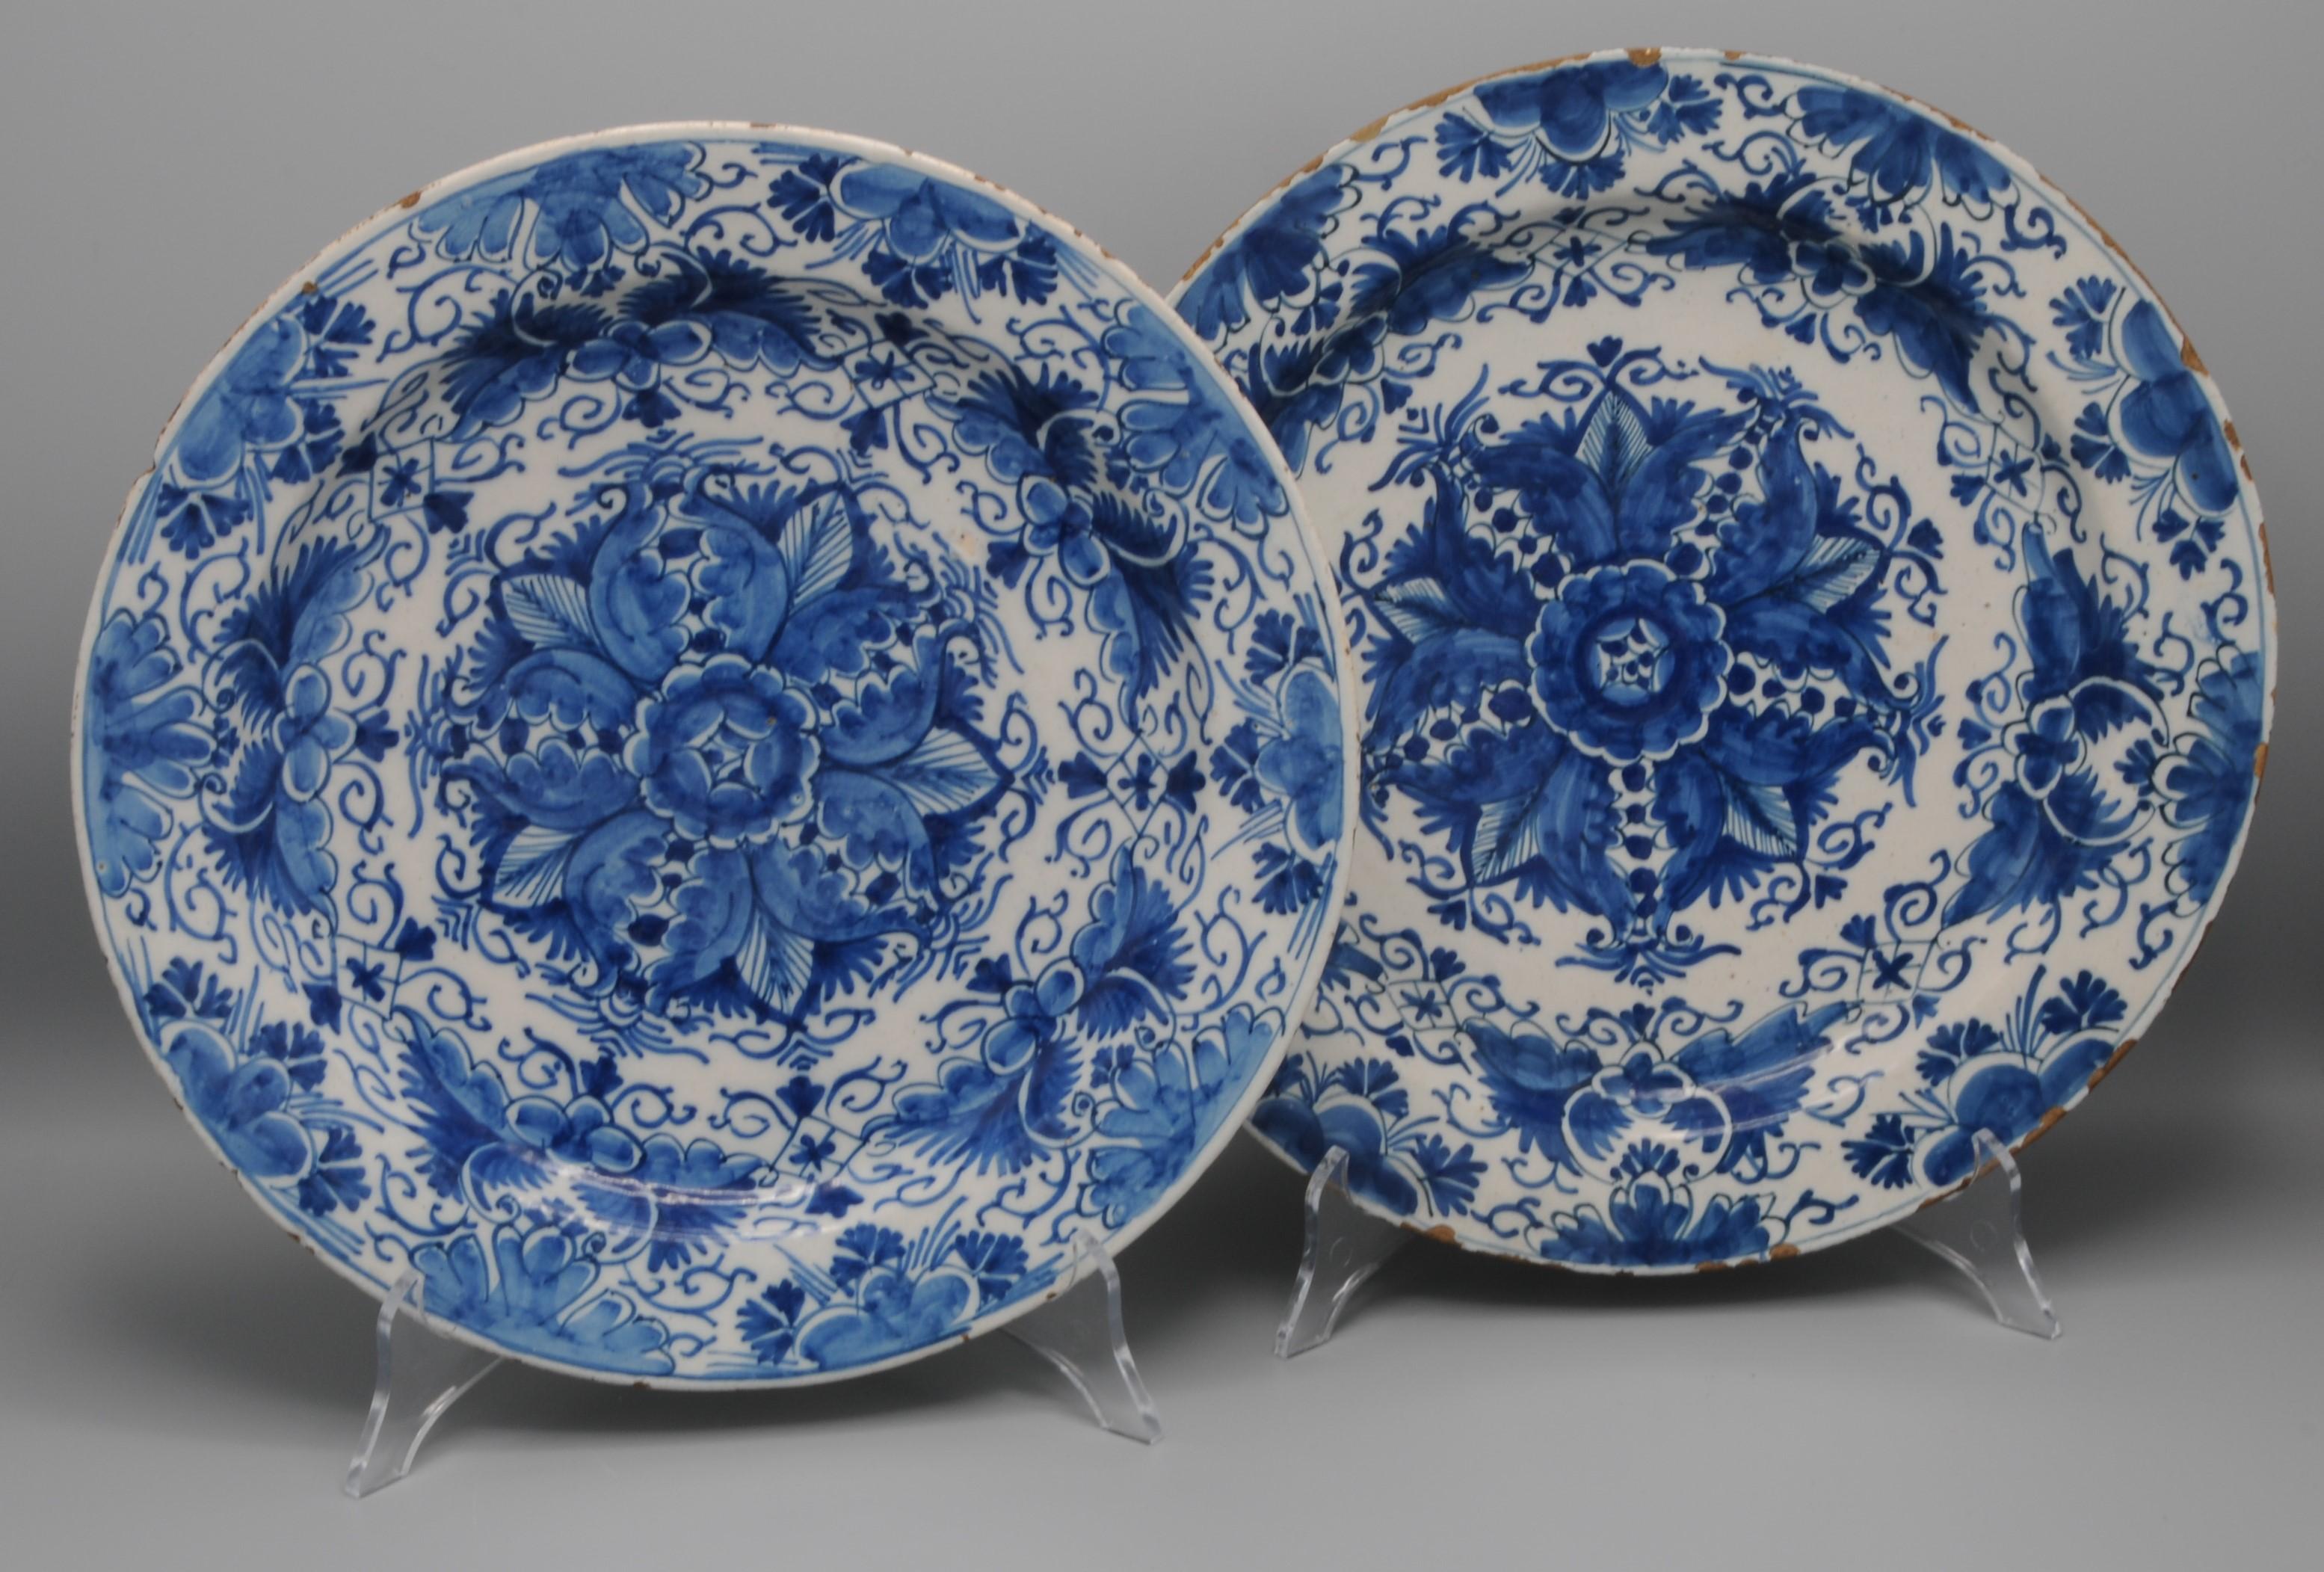 Ausgezeichnetes Paar Delfter Teller aus der Mitte des 18. Jahrhunderts mit einem seltenen geometrischen Dekor aus einer stilisierten Blume mit Blattranken. 
Die Umrandung ist mit Laubblättern und Blumenzweigen verziert. 

Unmarkiert